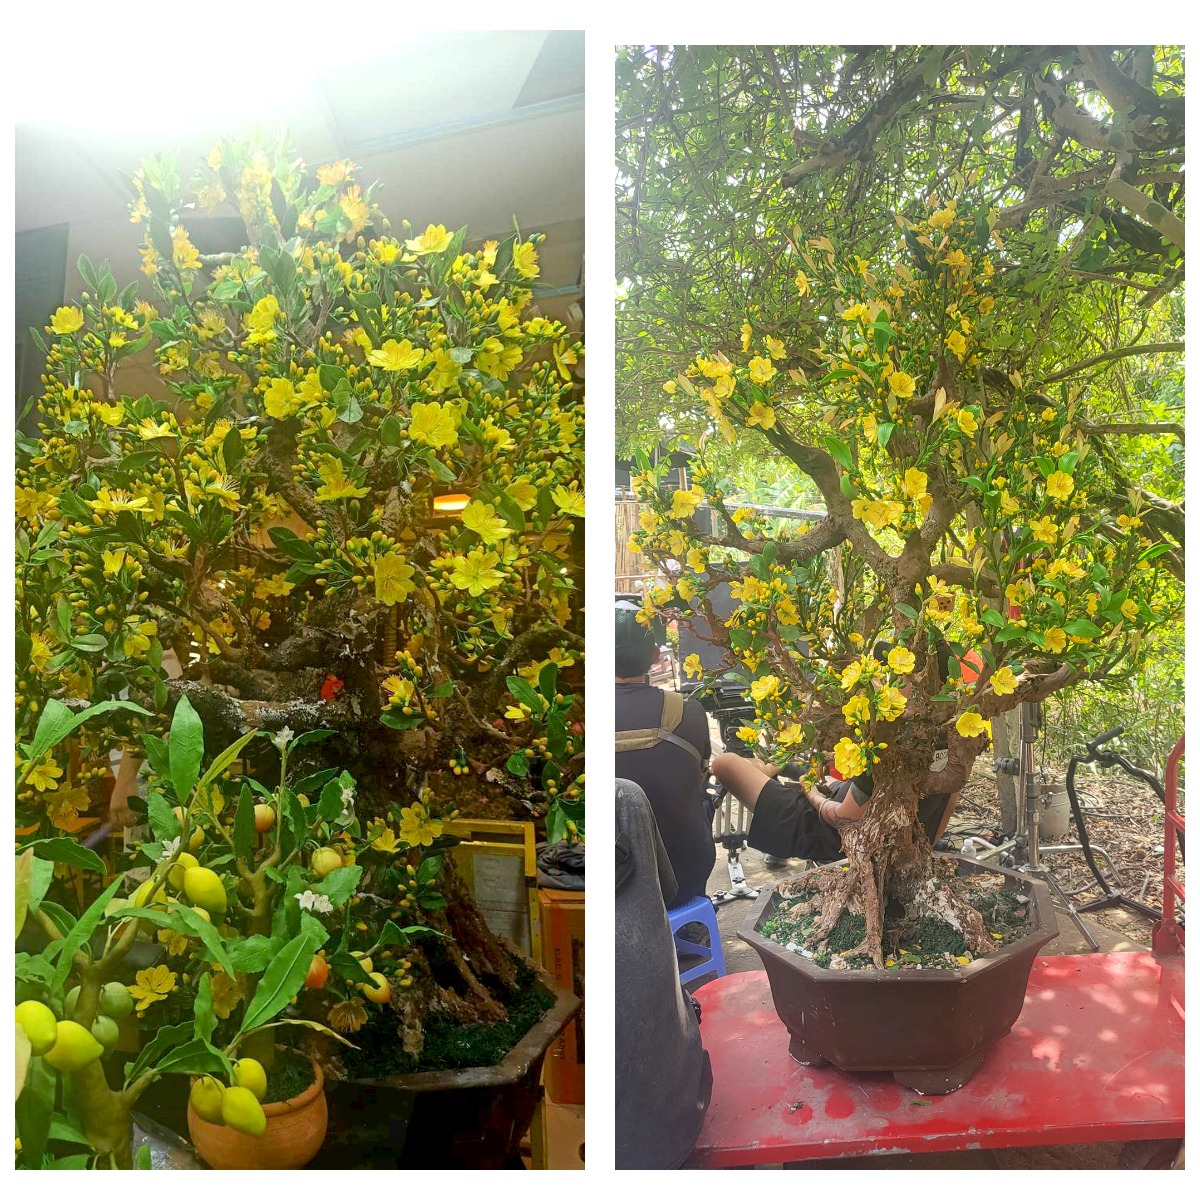 Cây mai bonsai được bán giá 18 triệu đồng.